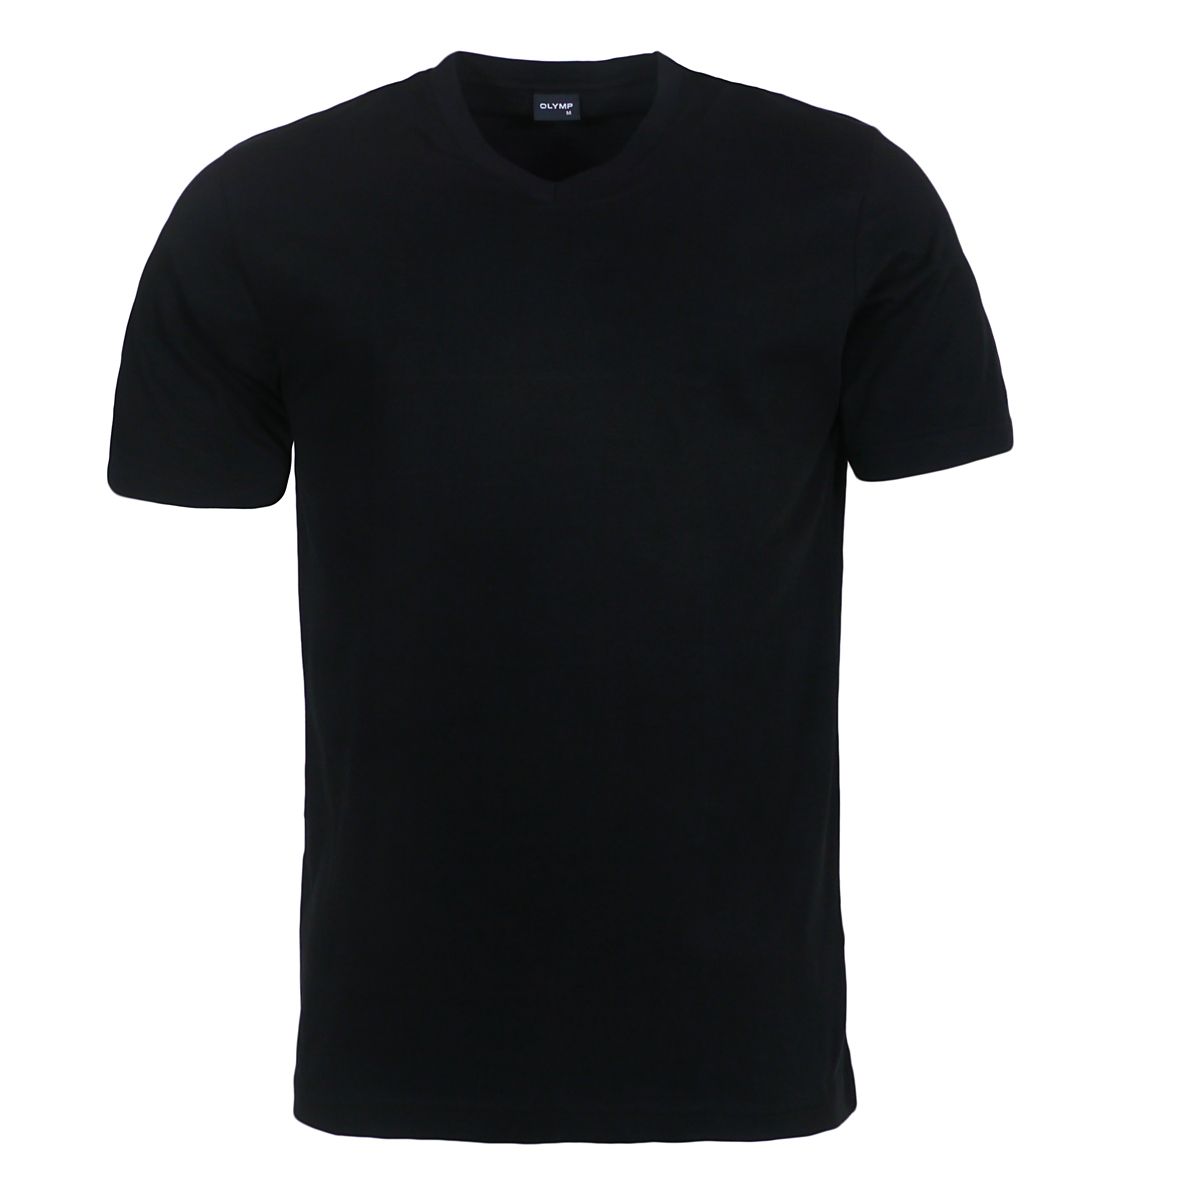 Olymp s. Черная футболка хб. Дизель футболка черная мужская. Косая черная мужская футболка. T Shirts однотонный чёрный.